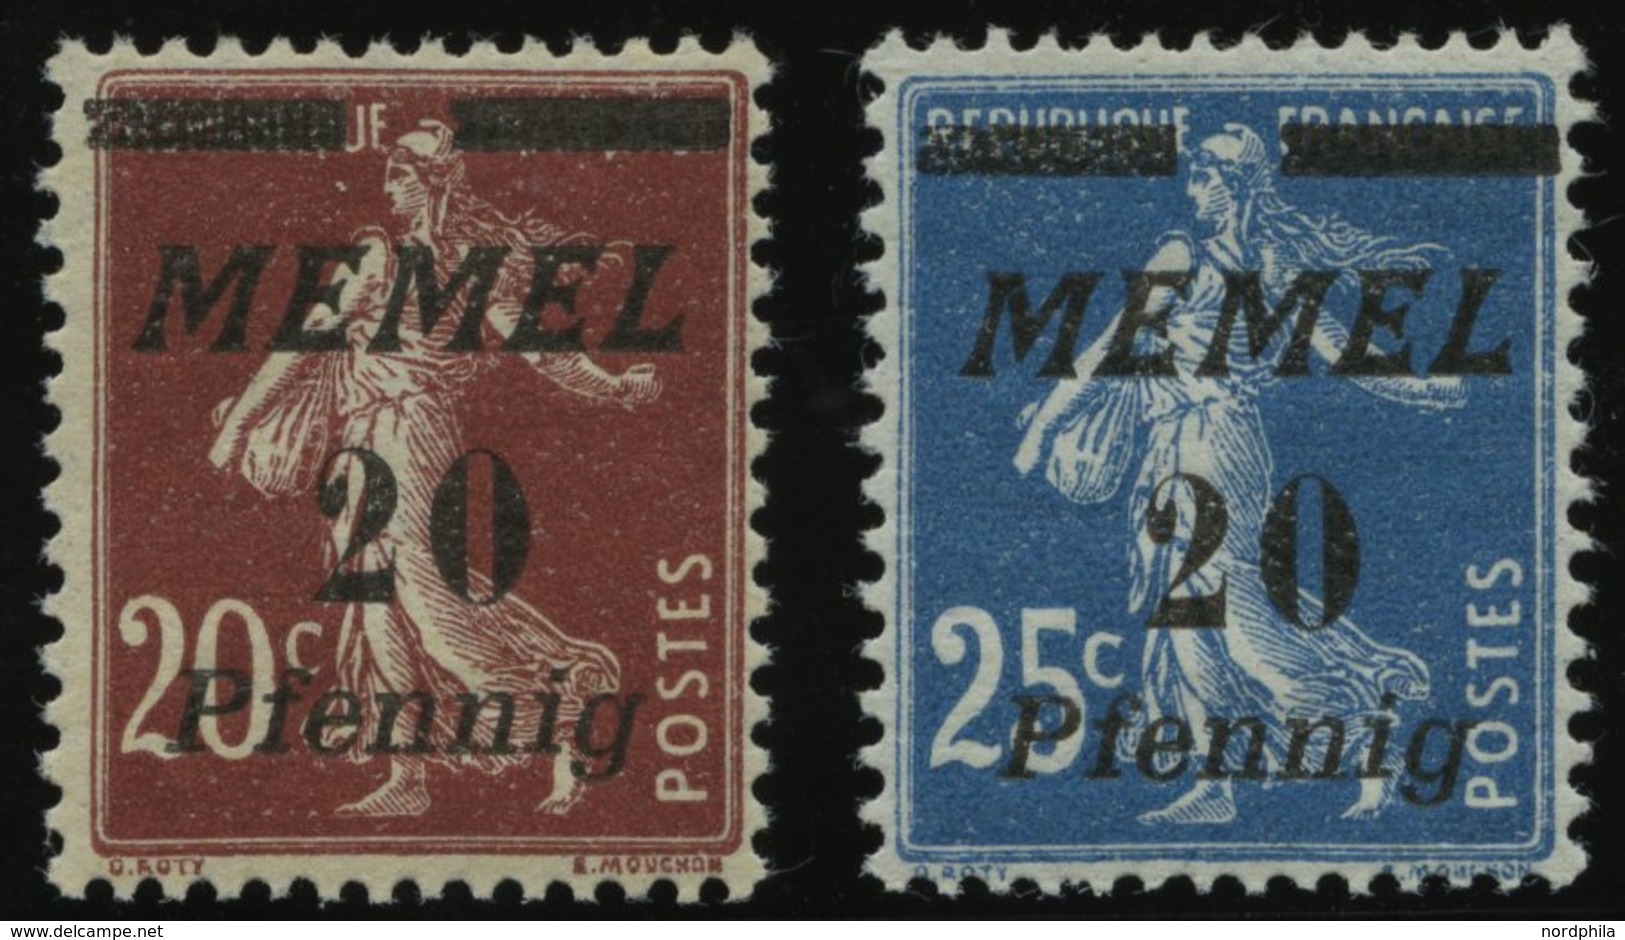 MEMELGEBIET 56/7 **, 1922, 20 Pf. Auf 20 C. Graubraun Und 20 Pf. Auf 25 C. Blau, 2 Postfrische Prachtwerte, Mi. 90.- - Memel (Klaipeda) 1923